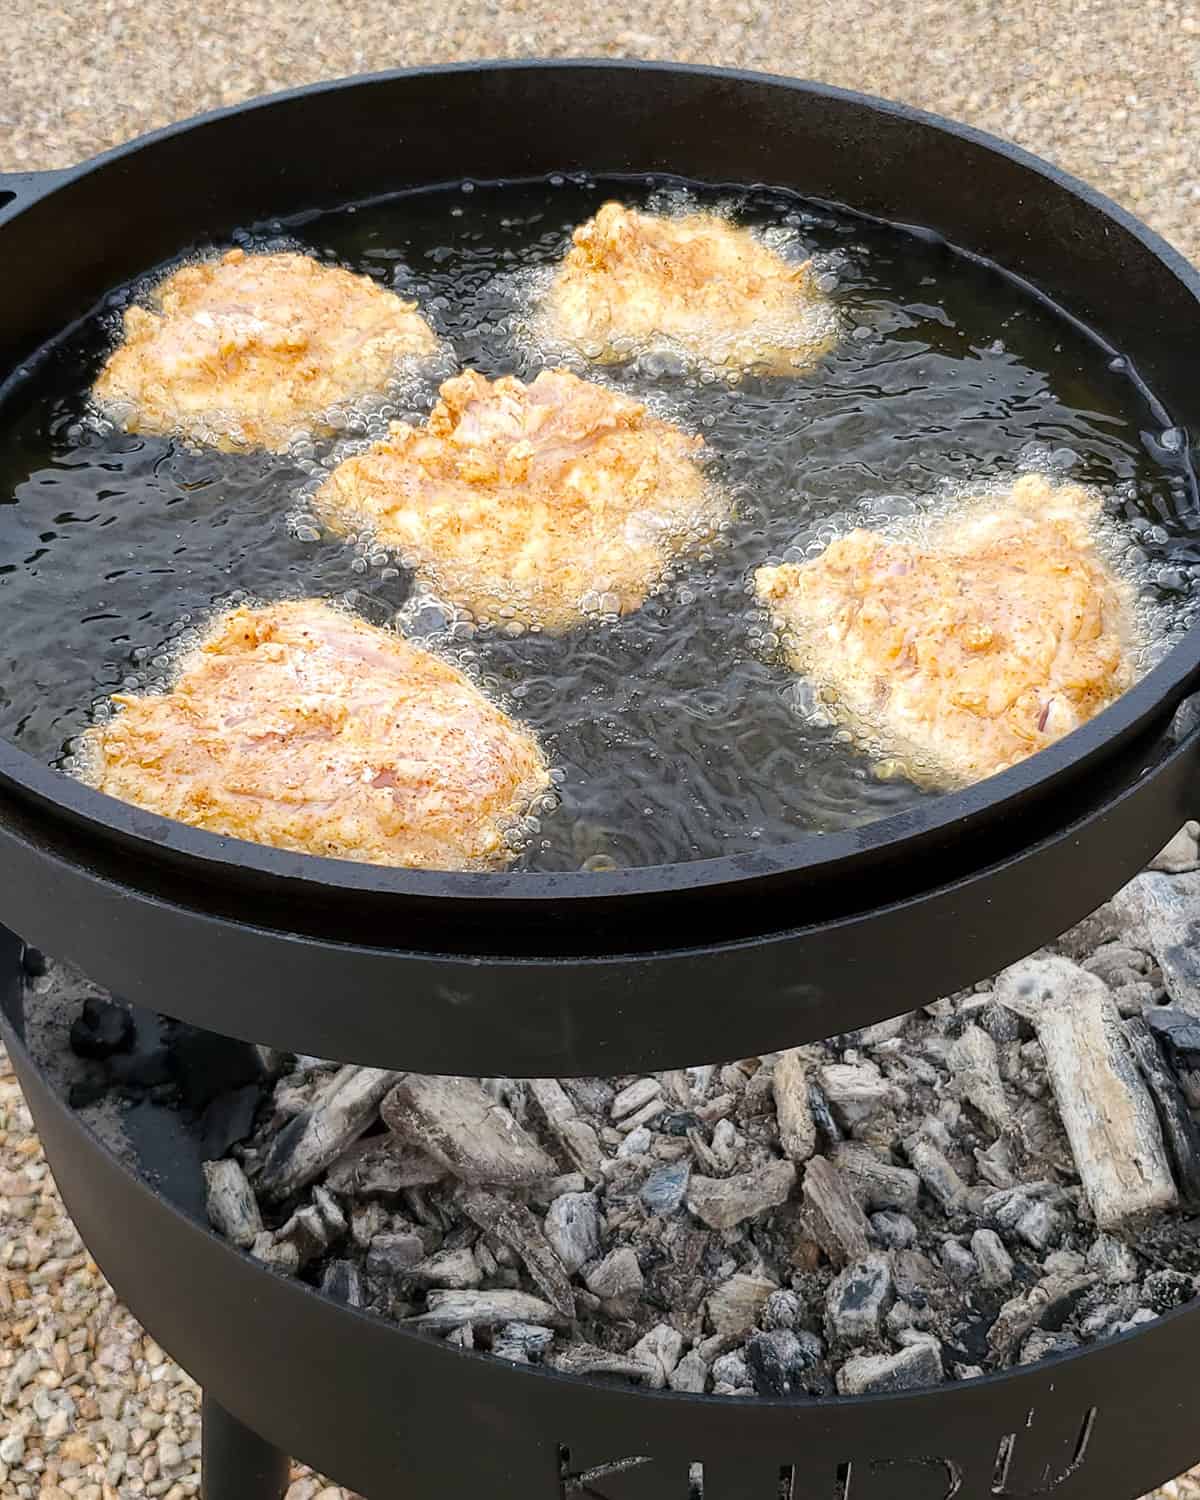 Nashville hot chicken frying in skillet.